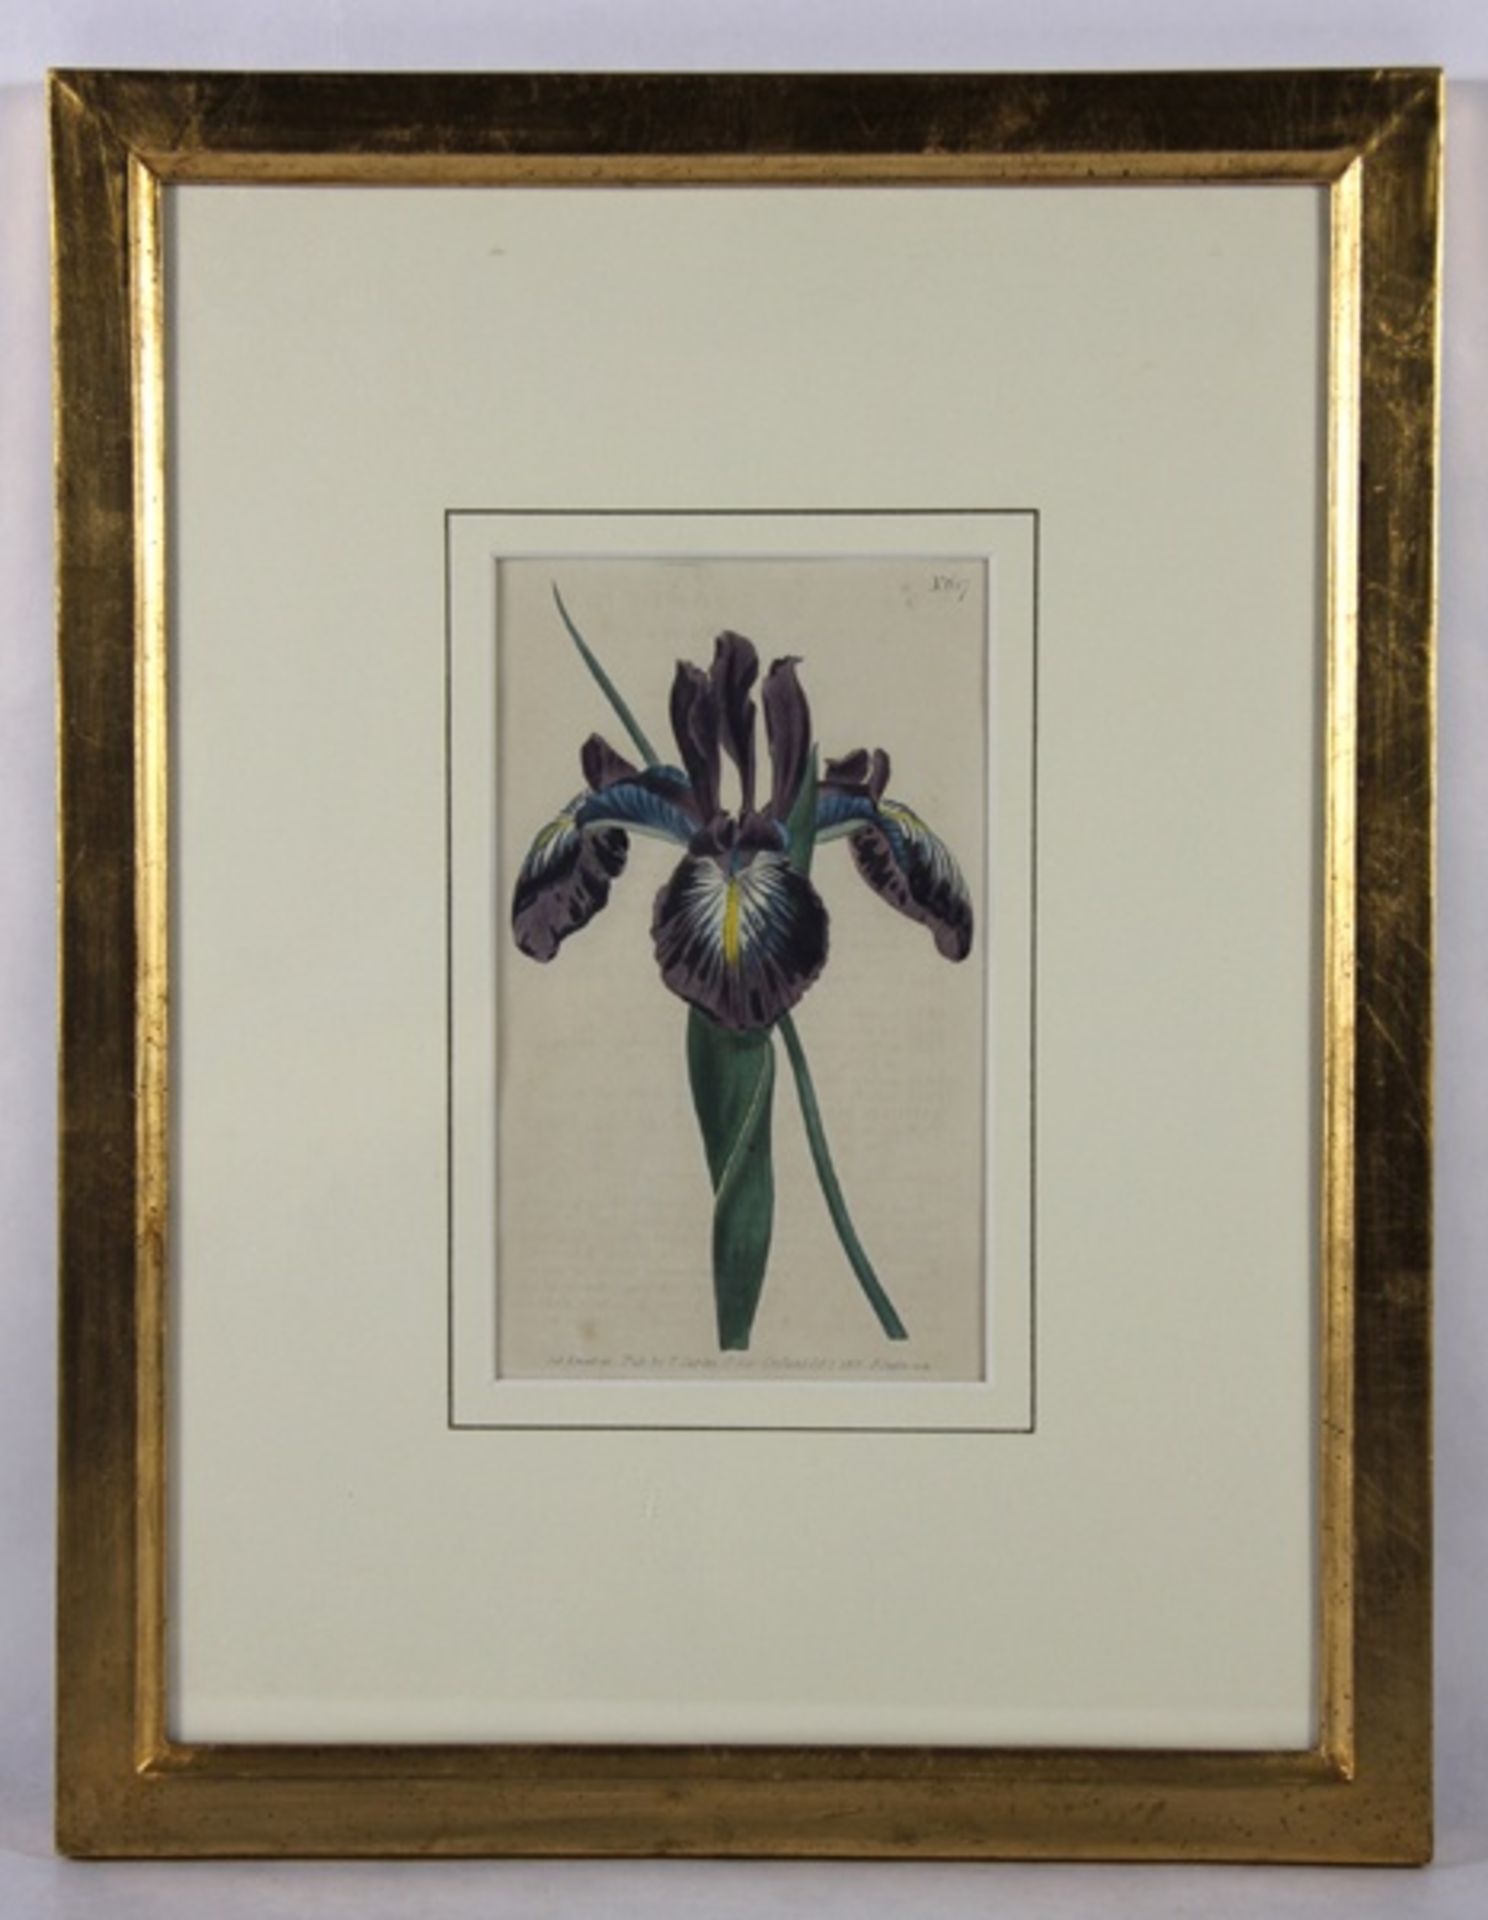 botanische Graphik19. Jhd., kolorierte Graphik einer violetten Iris, nach einer Zeichnung v.